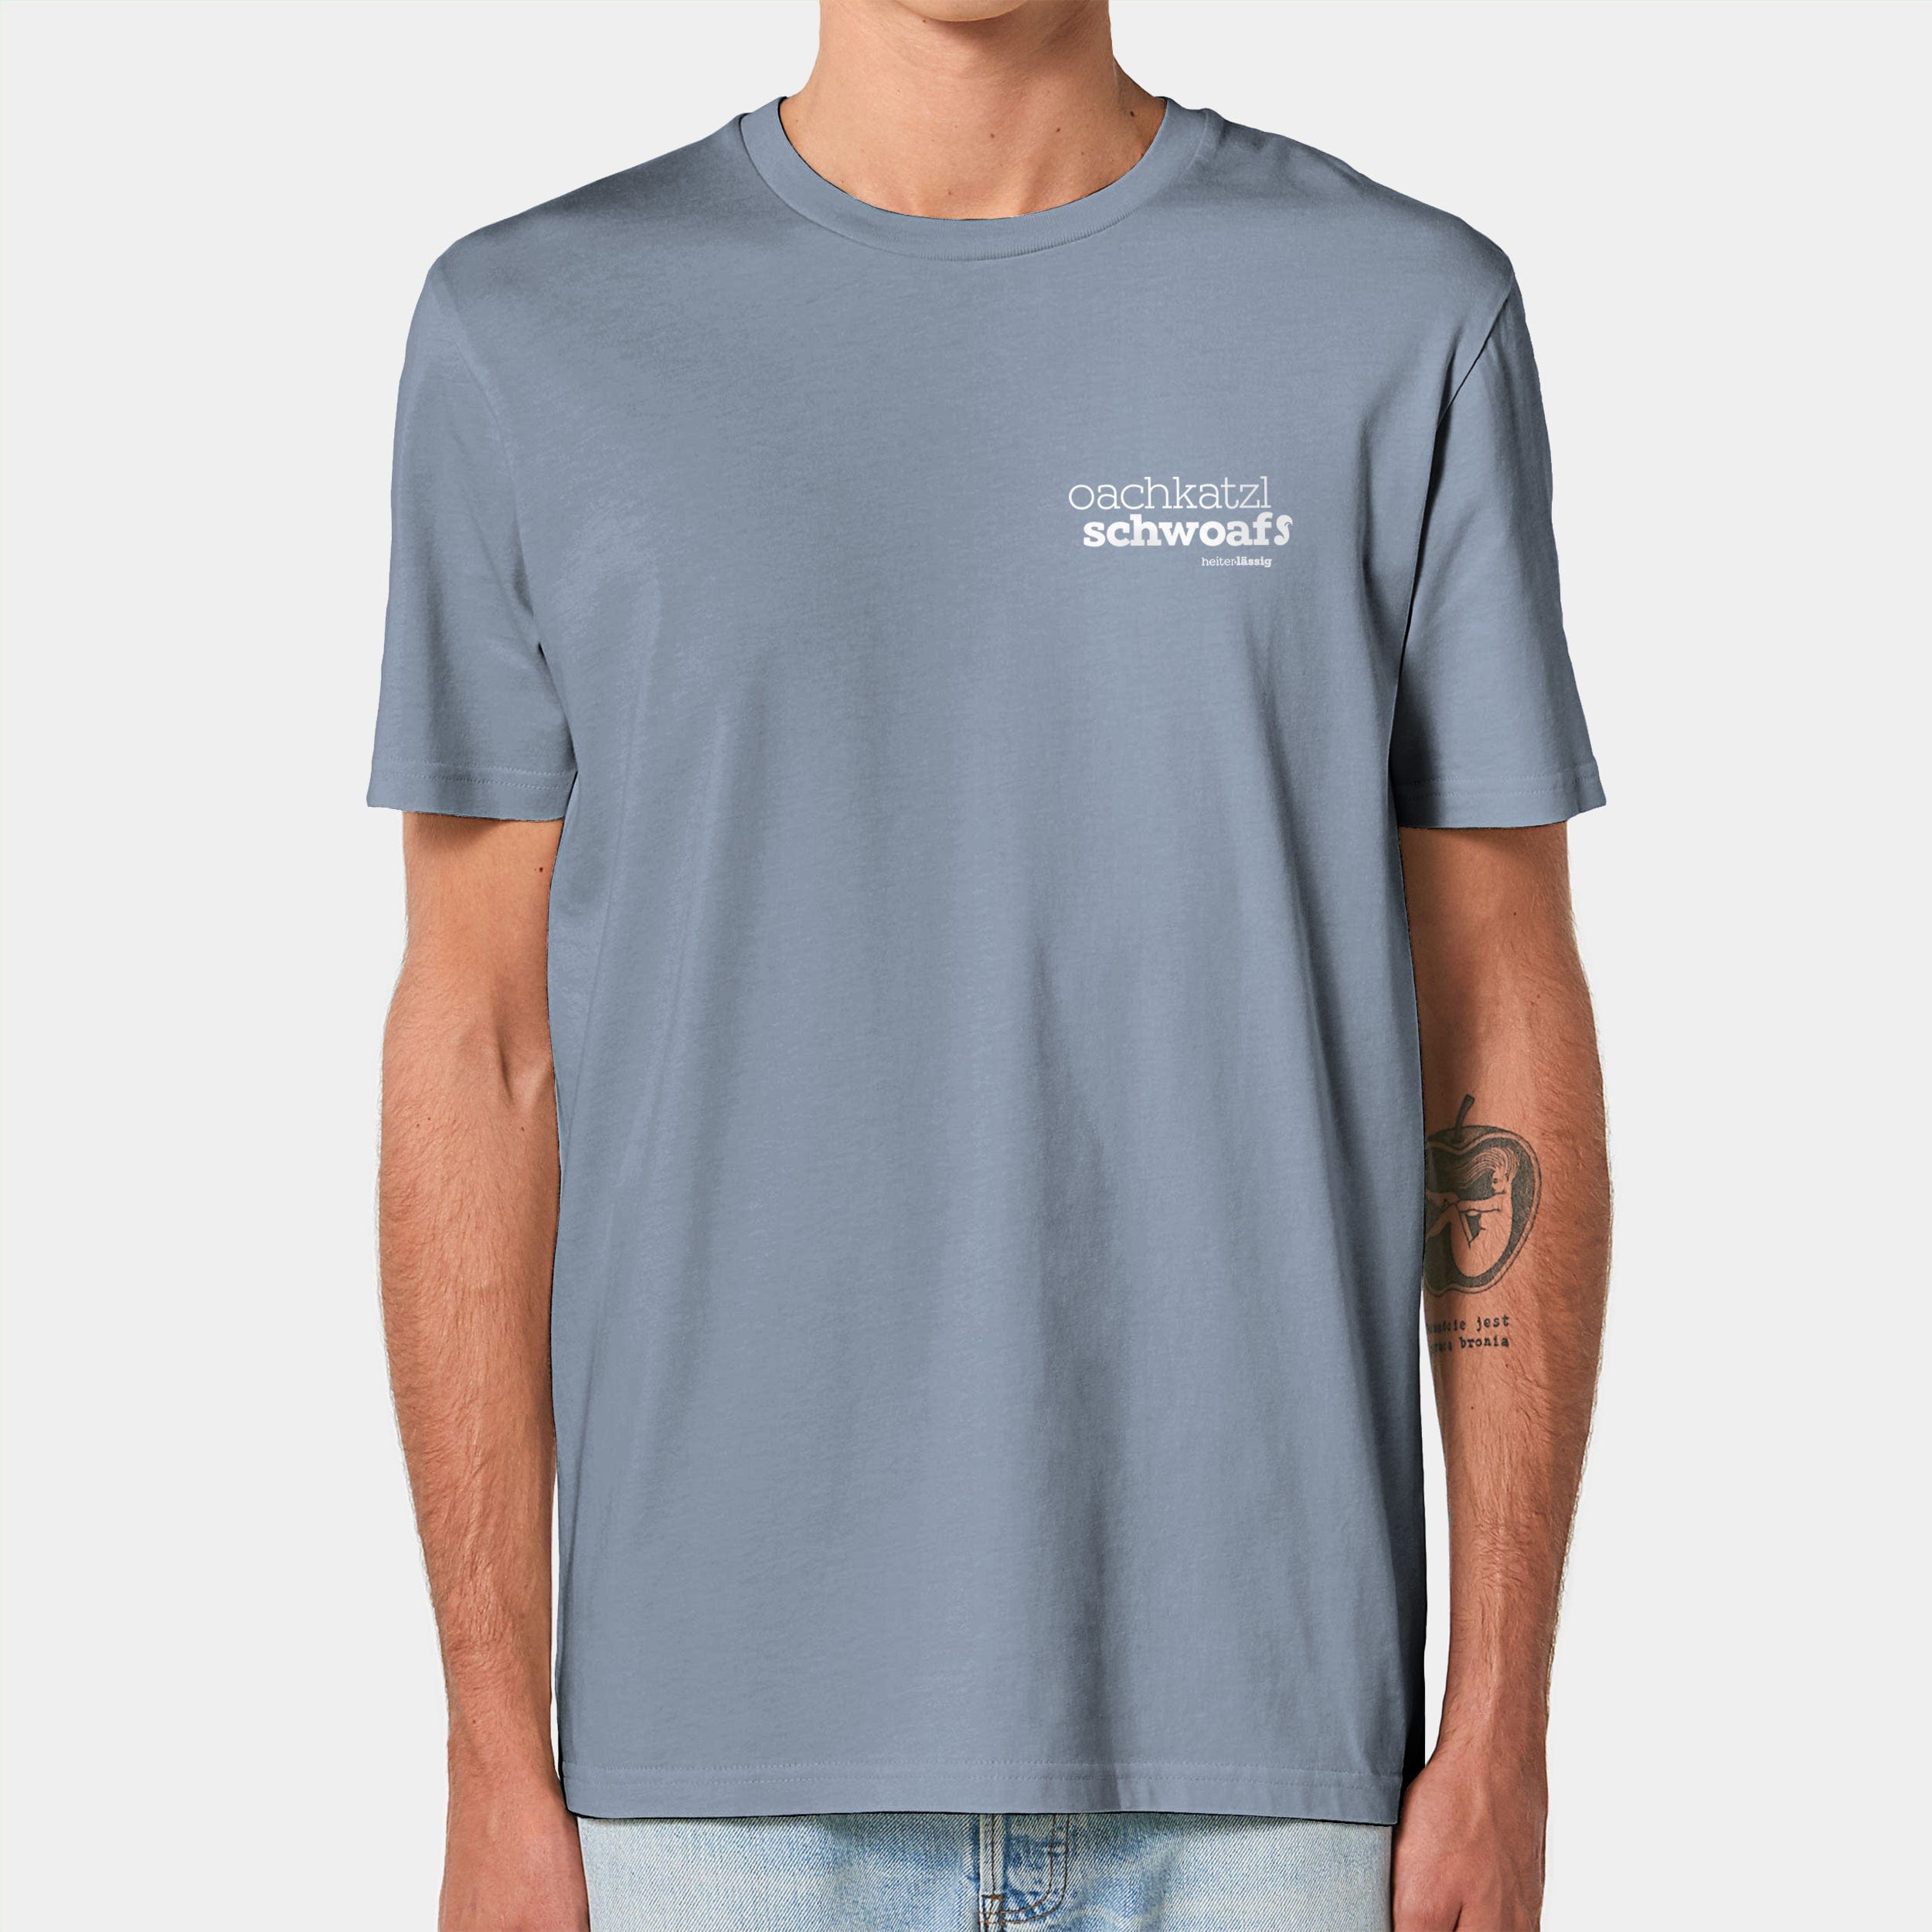 HEITER & LÄSSIG T-Shirt ORIGINAL "oachkatzlschwoaf" XXS / serene blue - aus nachhaltiger und fairer Produktion